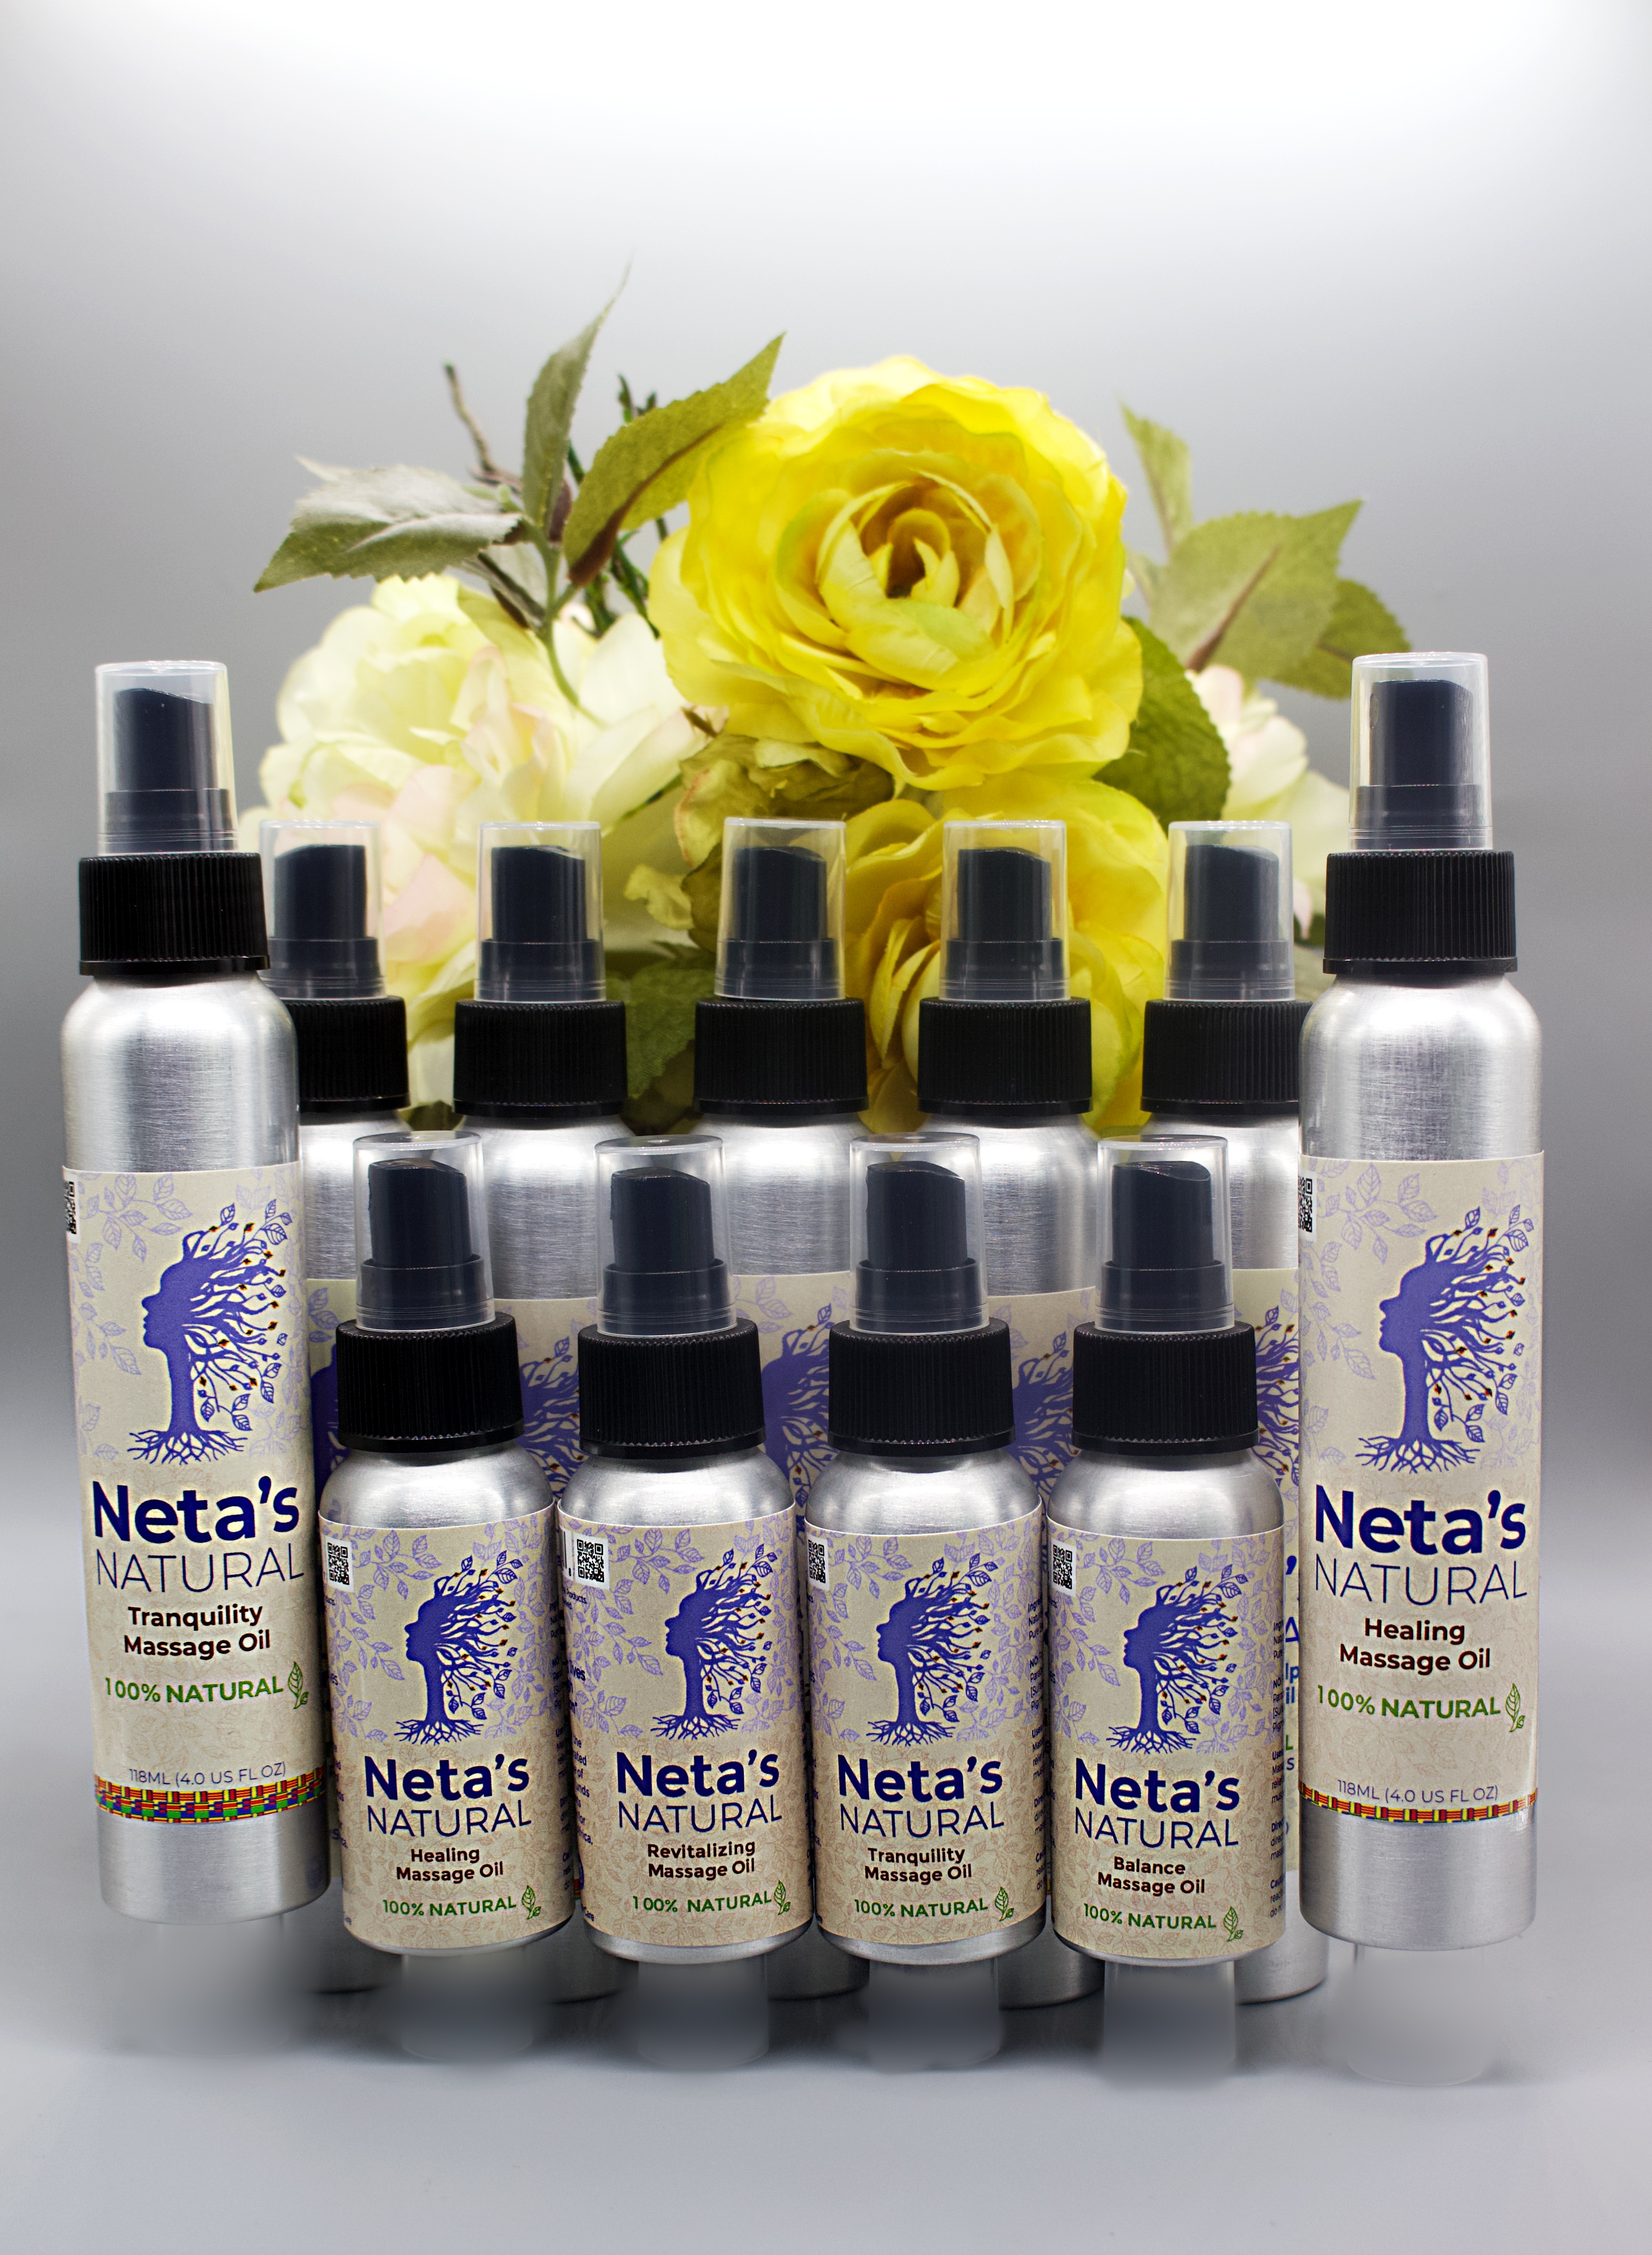 Netas Natural Products